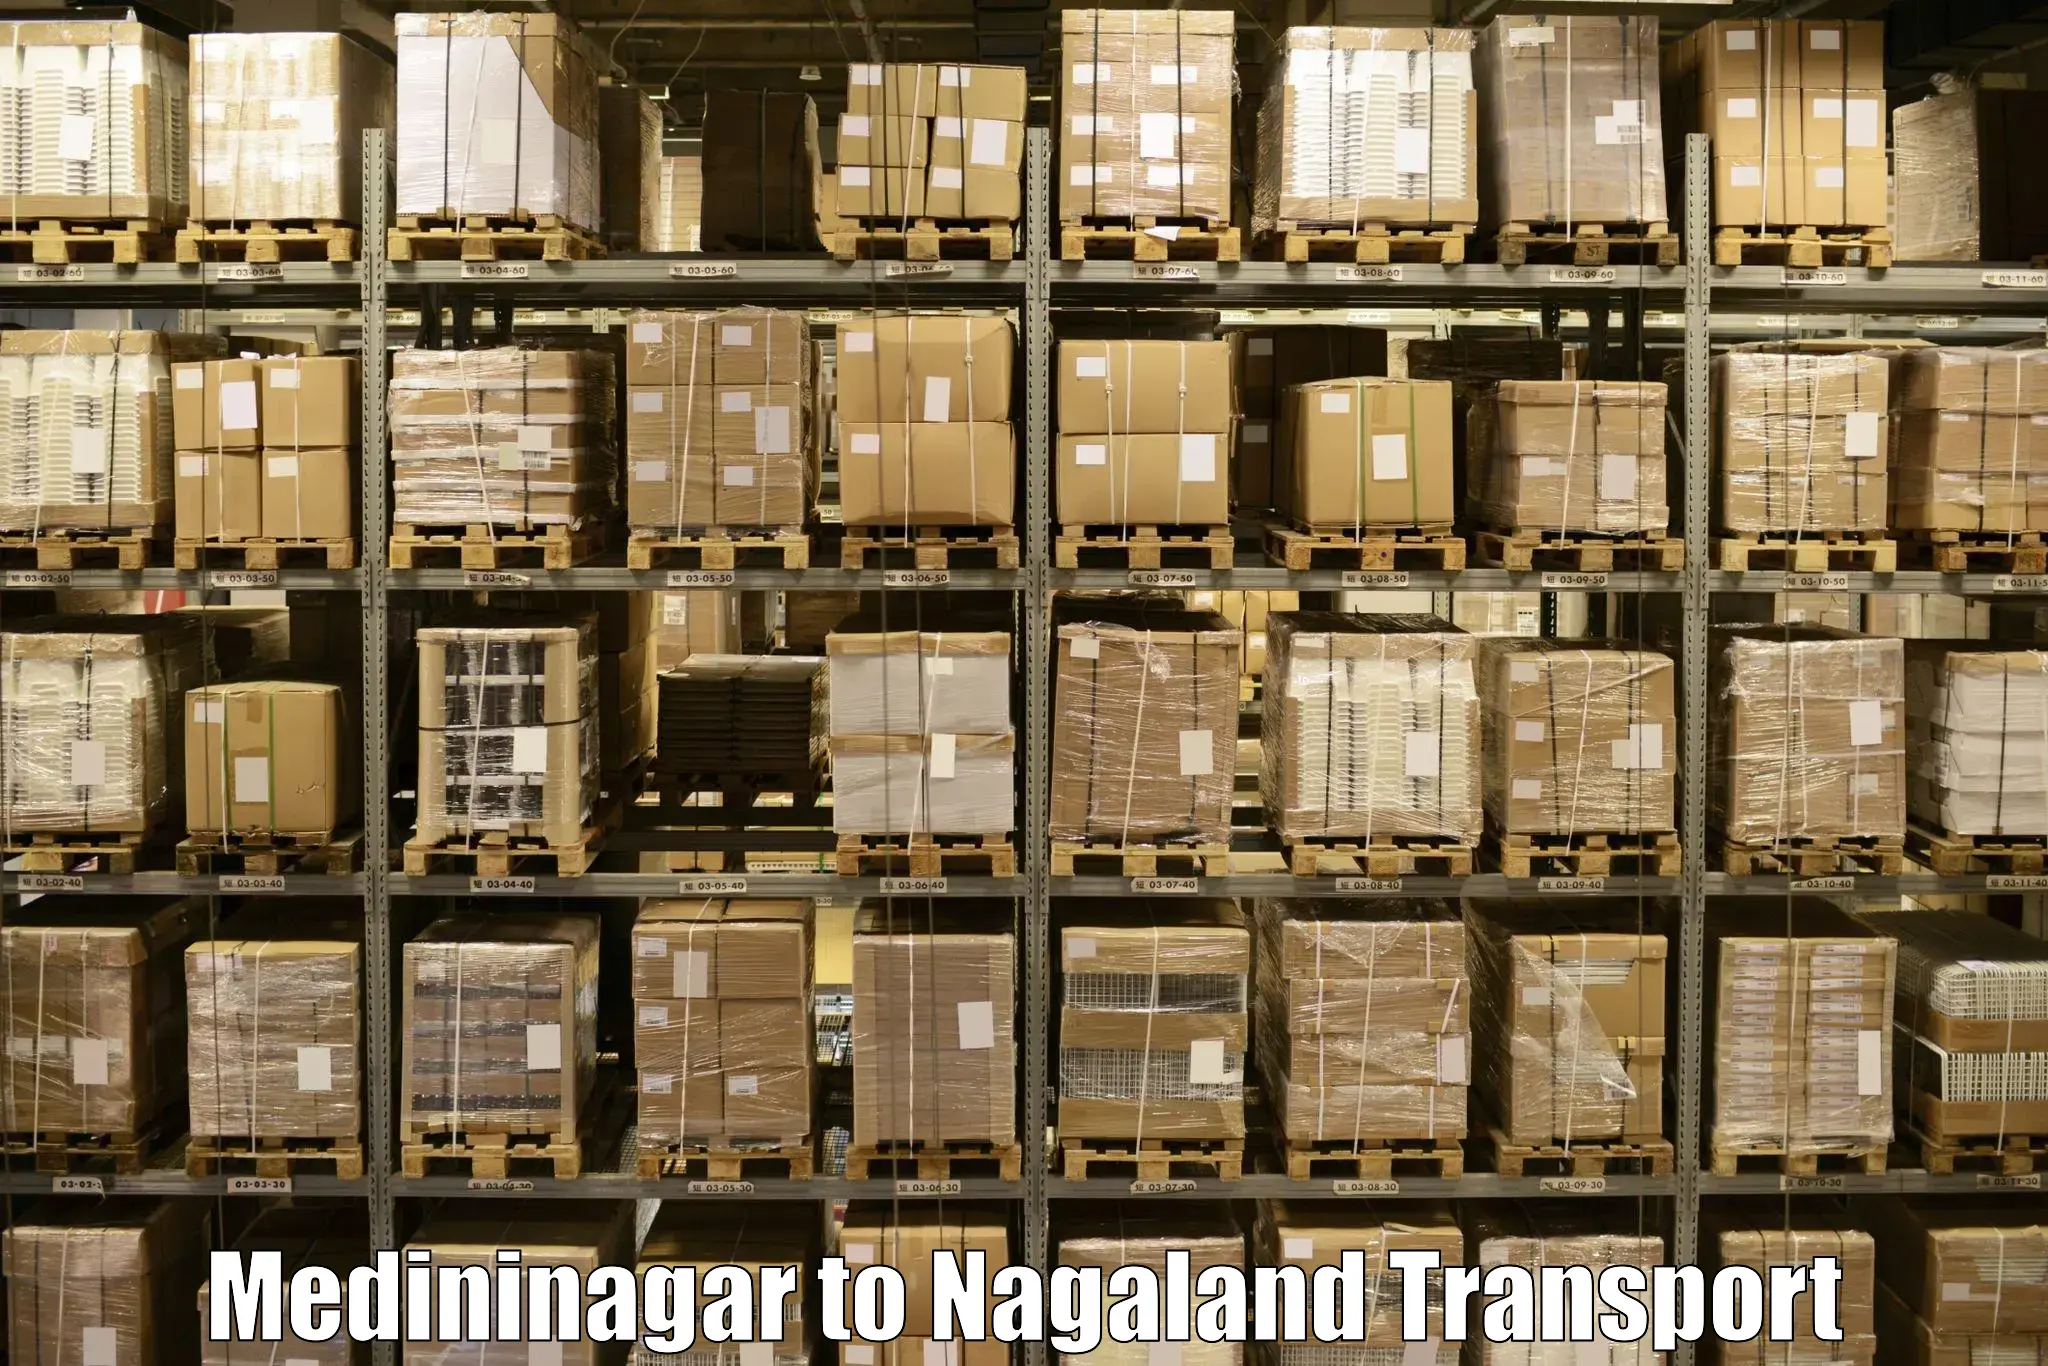 Road transport online services Medininagar to Nagaland